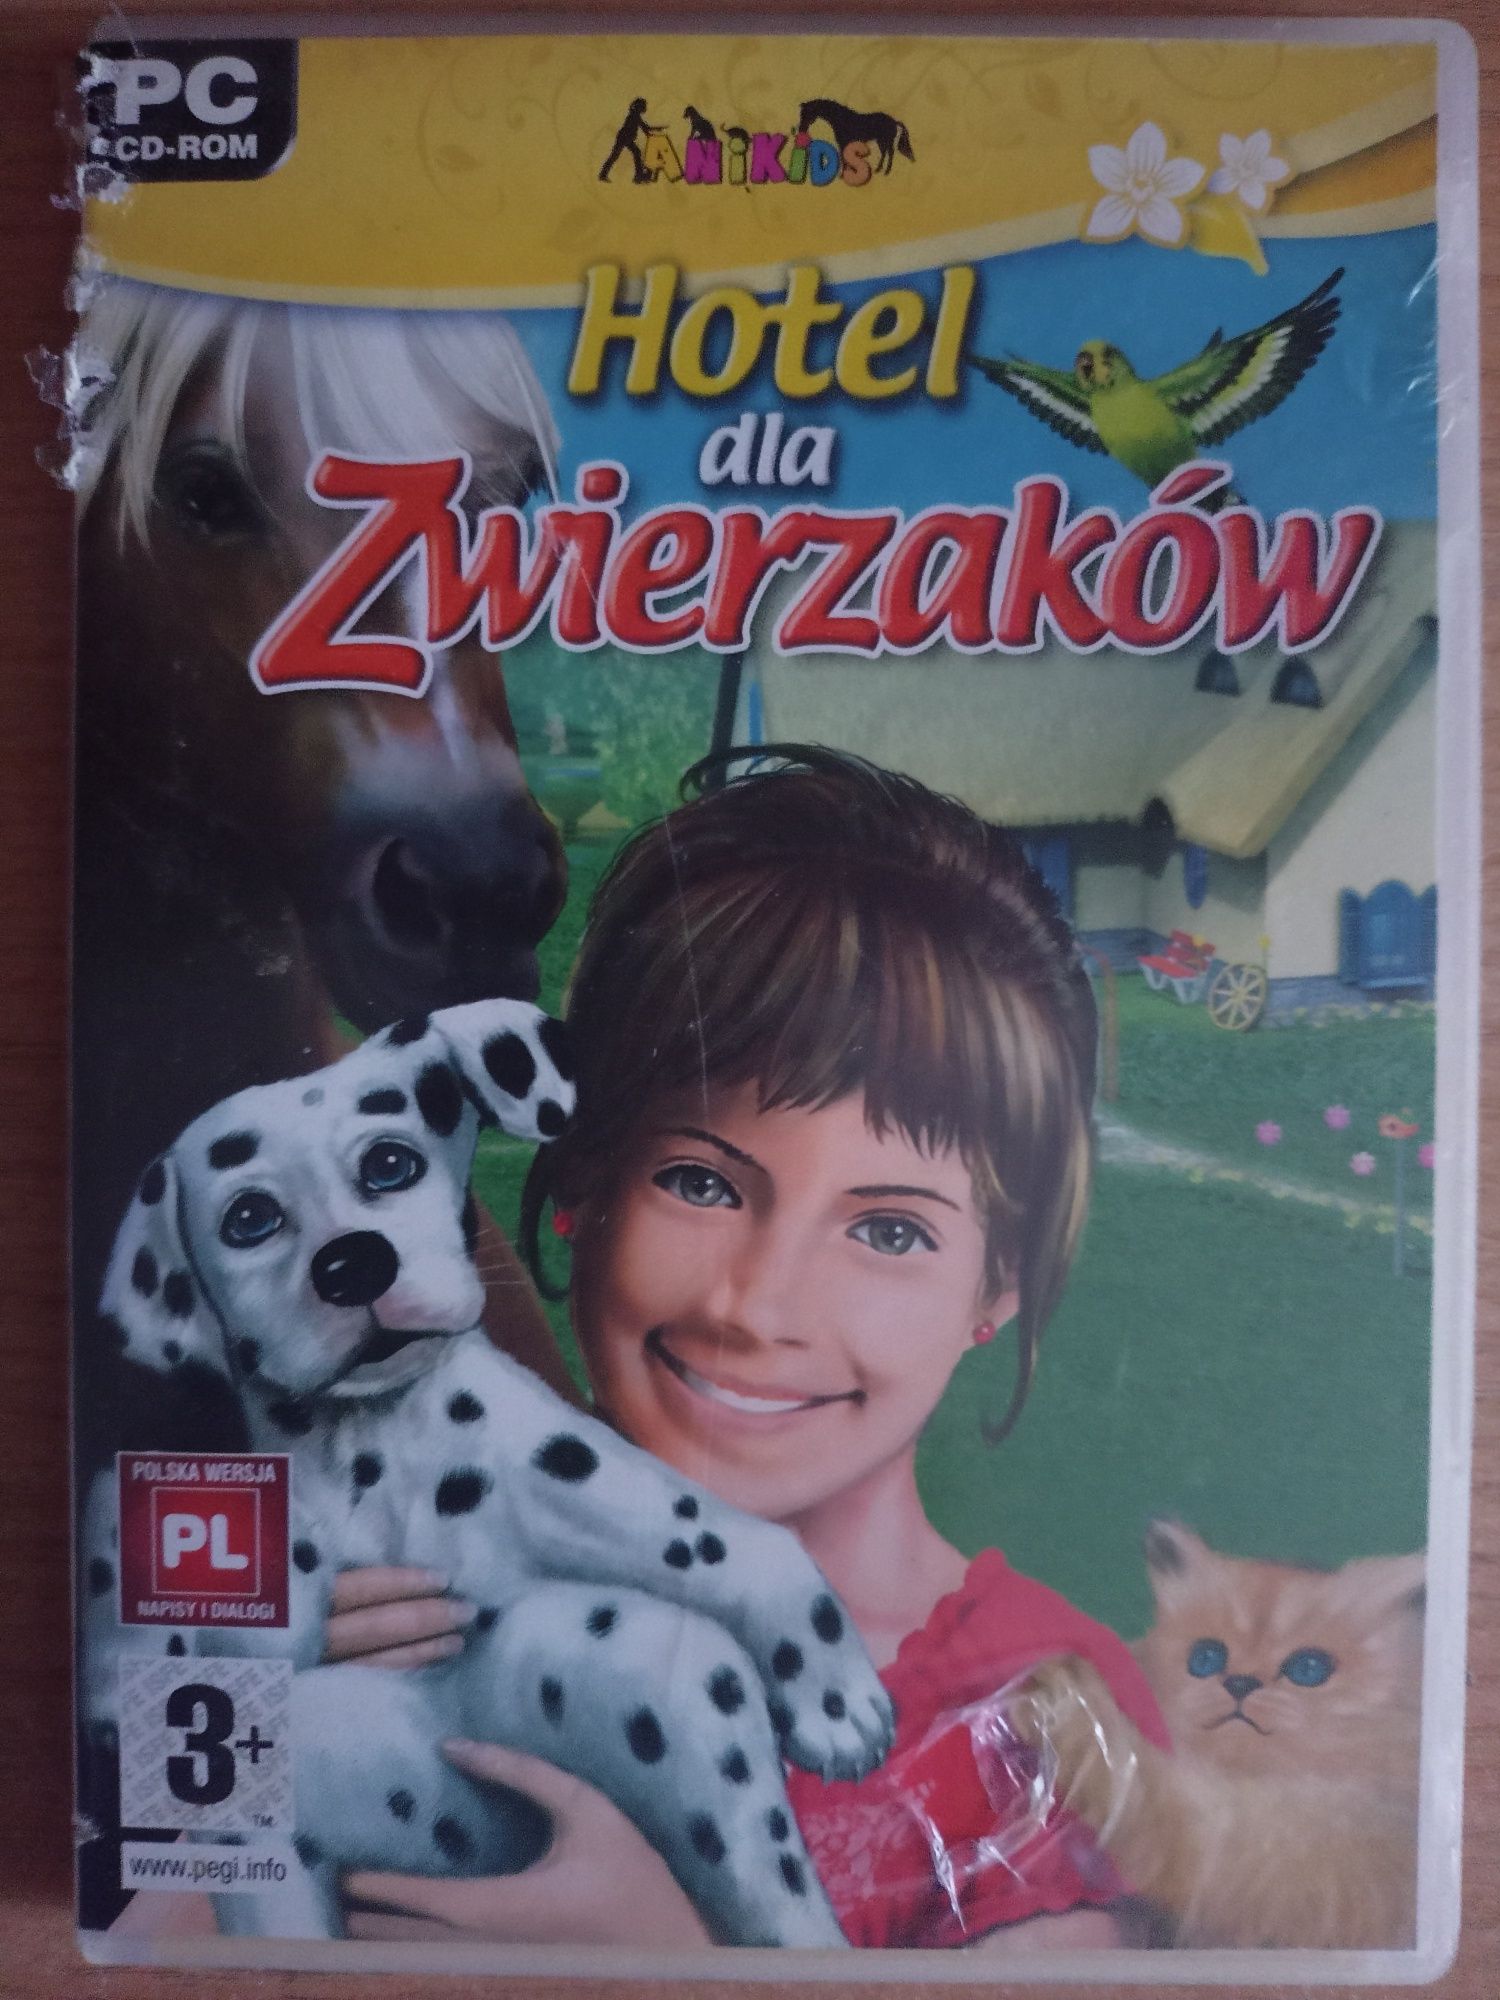 Hotel dla zwierzaków - fajna gra PC dla dzieci do 12 lat